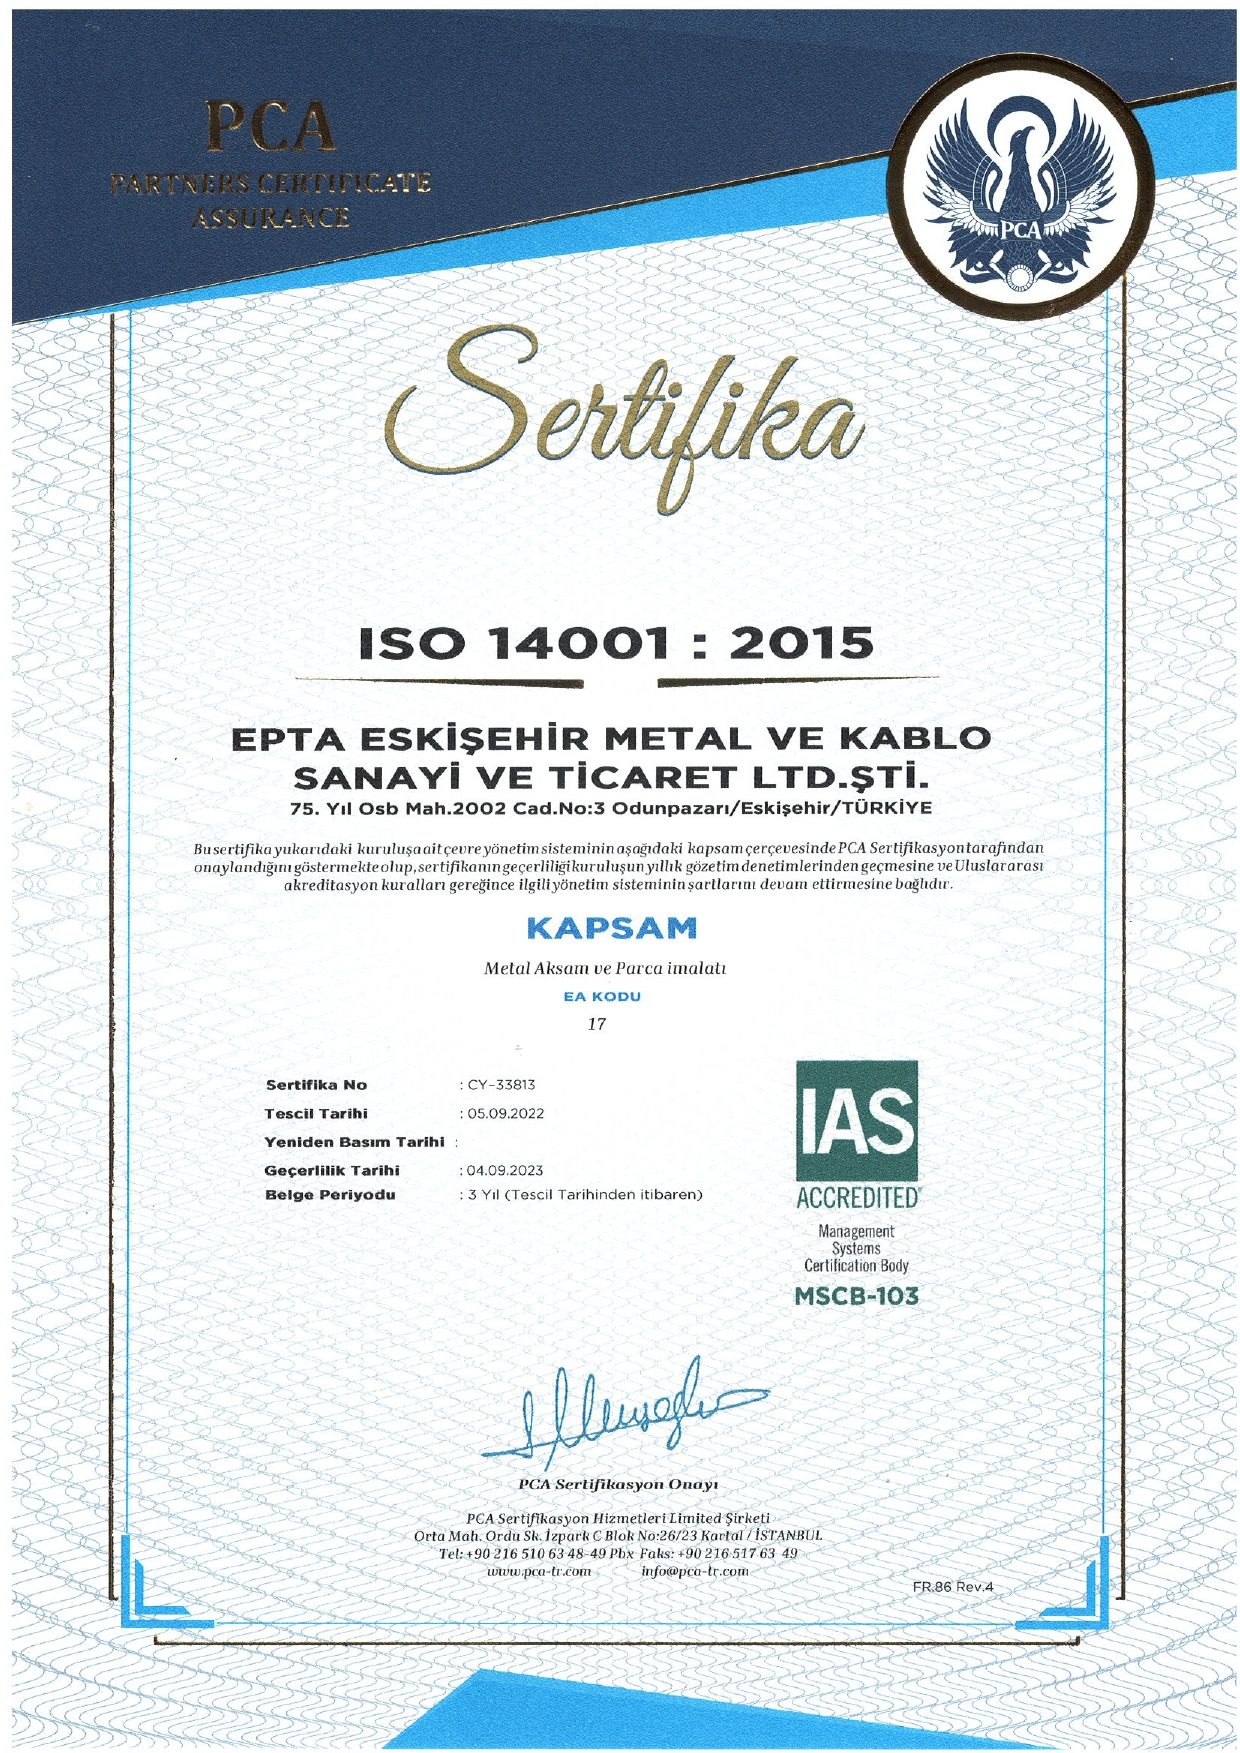 ISO 14001 : 2015 ÇEVRE YÖNETİM SİSTEMİ Sertifikasını Almaya Hak Kazandık